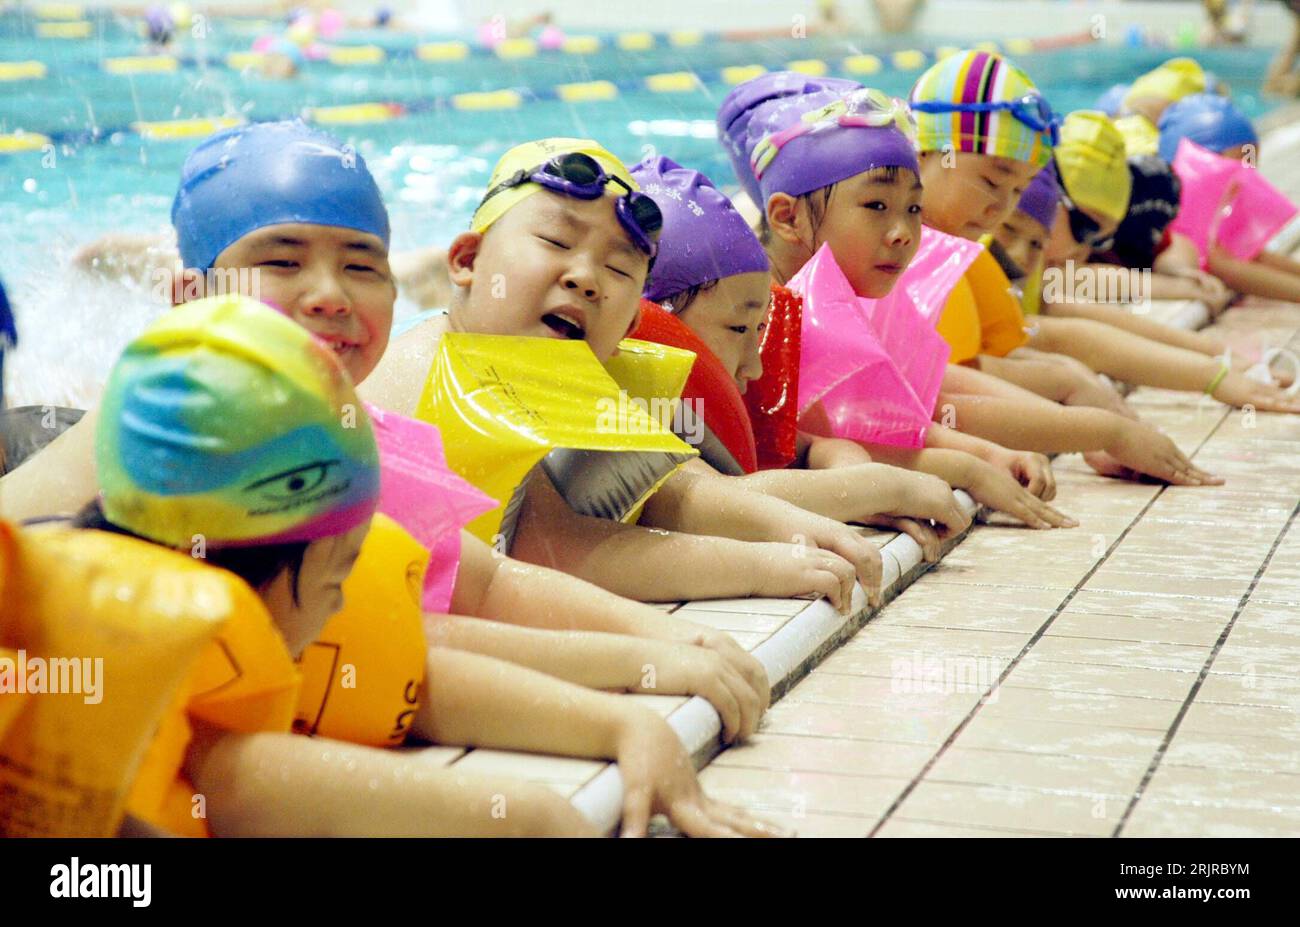 Bildnummer : 51368557 Datum : 18.07.2006 Copyright : imago/Xinhua Chinesische Schulkinder während eines Schwimmkurses in einer Schwimmhalle in Jinan PUBLICATIONxNOTxINxCHN, Personen ; 2006, Jinan, Kind, Kind, Kind, Kind, Kinder, Mädchen, Chinois, Chinesen, Chinesin, Junge, Jungen, Jungs, schwimmen, schwimmend, schwimmt, lernen, lernend, lernt, Schwimmunterricht, Kurs, Kurse, Schwimmkurs, Schwimmkurse, Schulkind; , quer, Kbdig, Gruppenbild, Chine, , Schule, Bildung, Banque D'Images